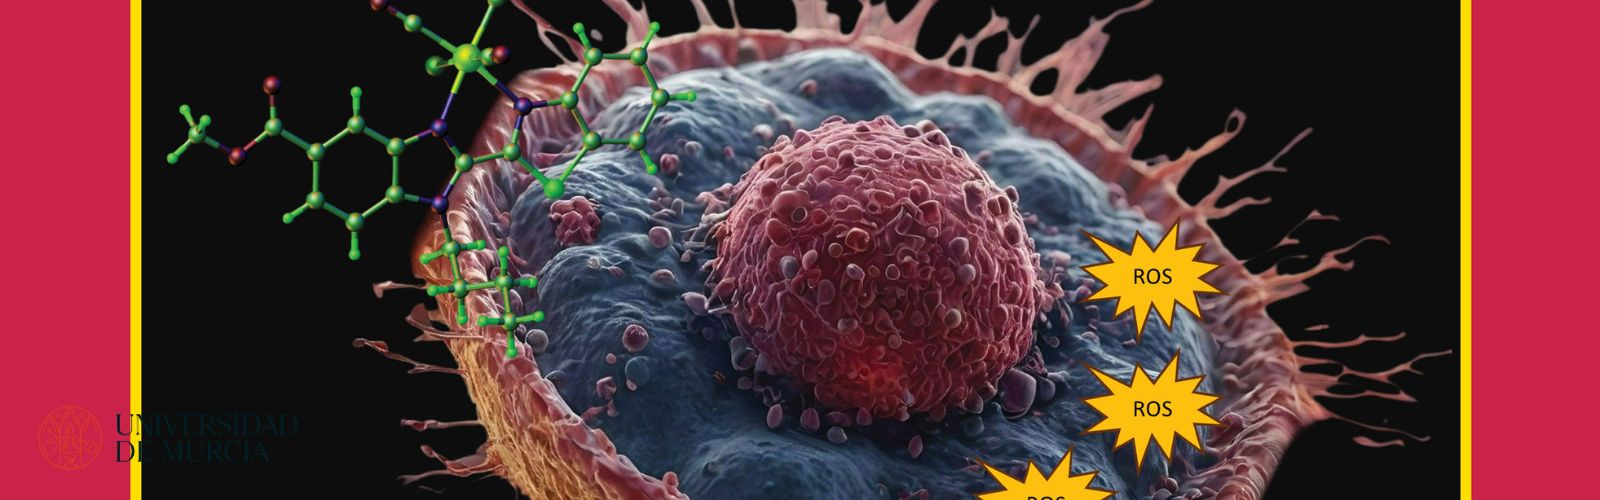 Un equipo multidisciplinar de la UMU logra la portada de Medicinal Chemistry con el descubrimiento de nuevos agentes que matan las células tumorales